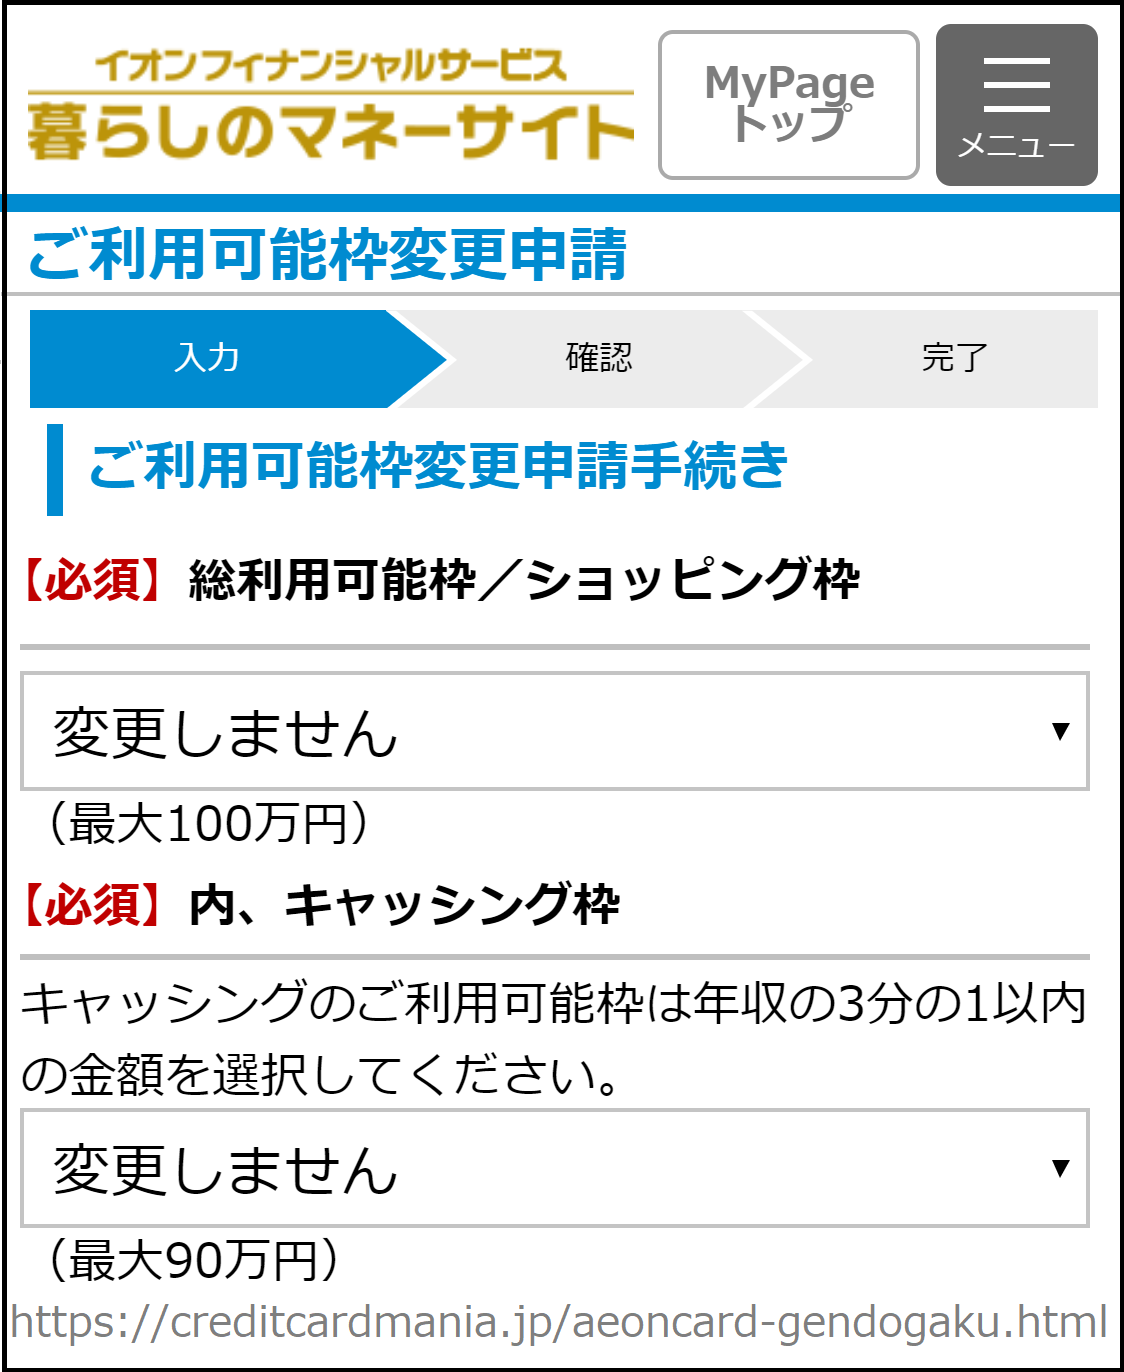 イオンNEXCO西日本カードの限度額の増額や減額の申請画面